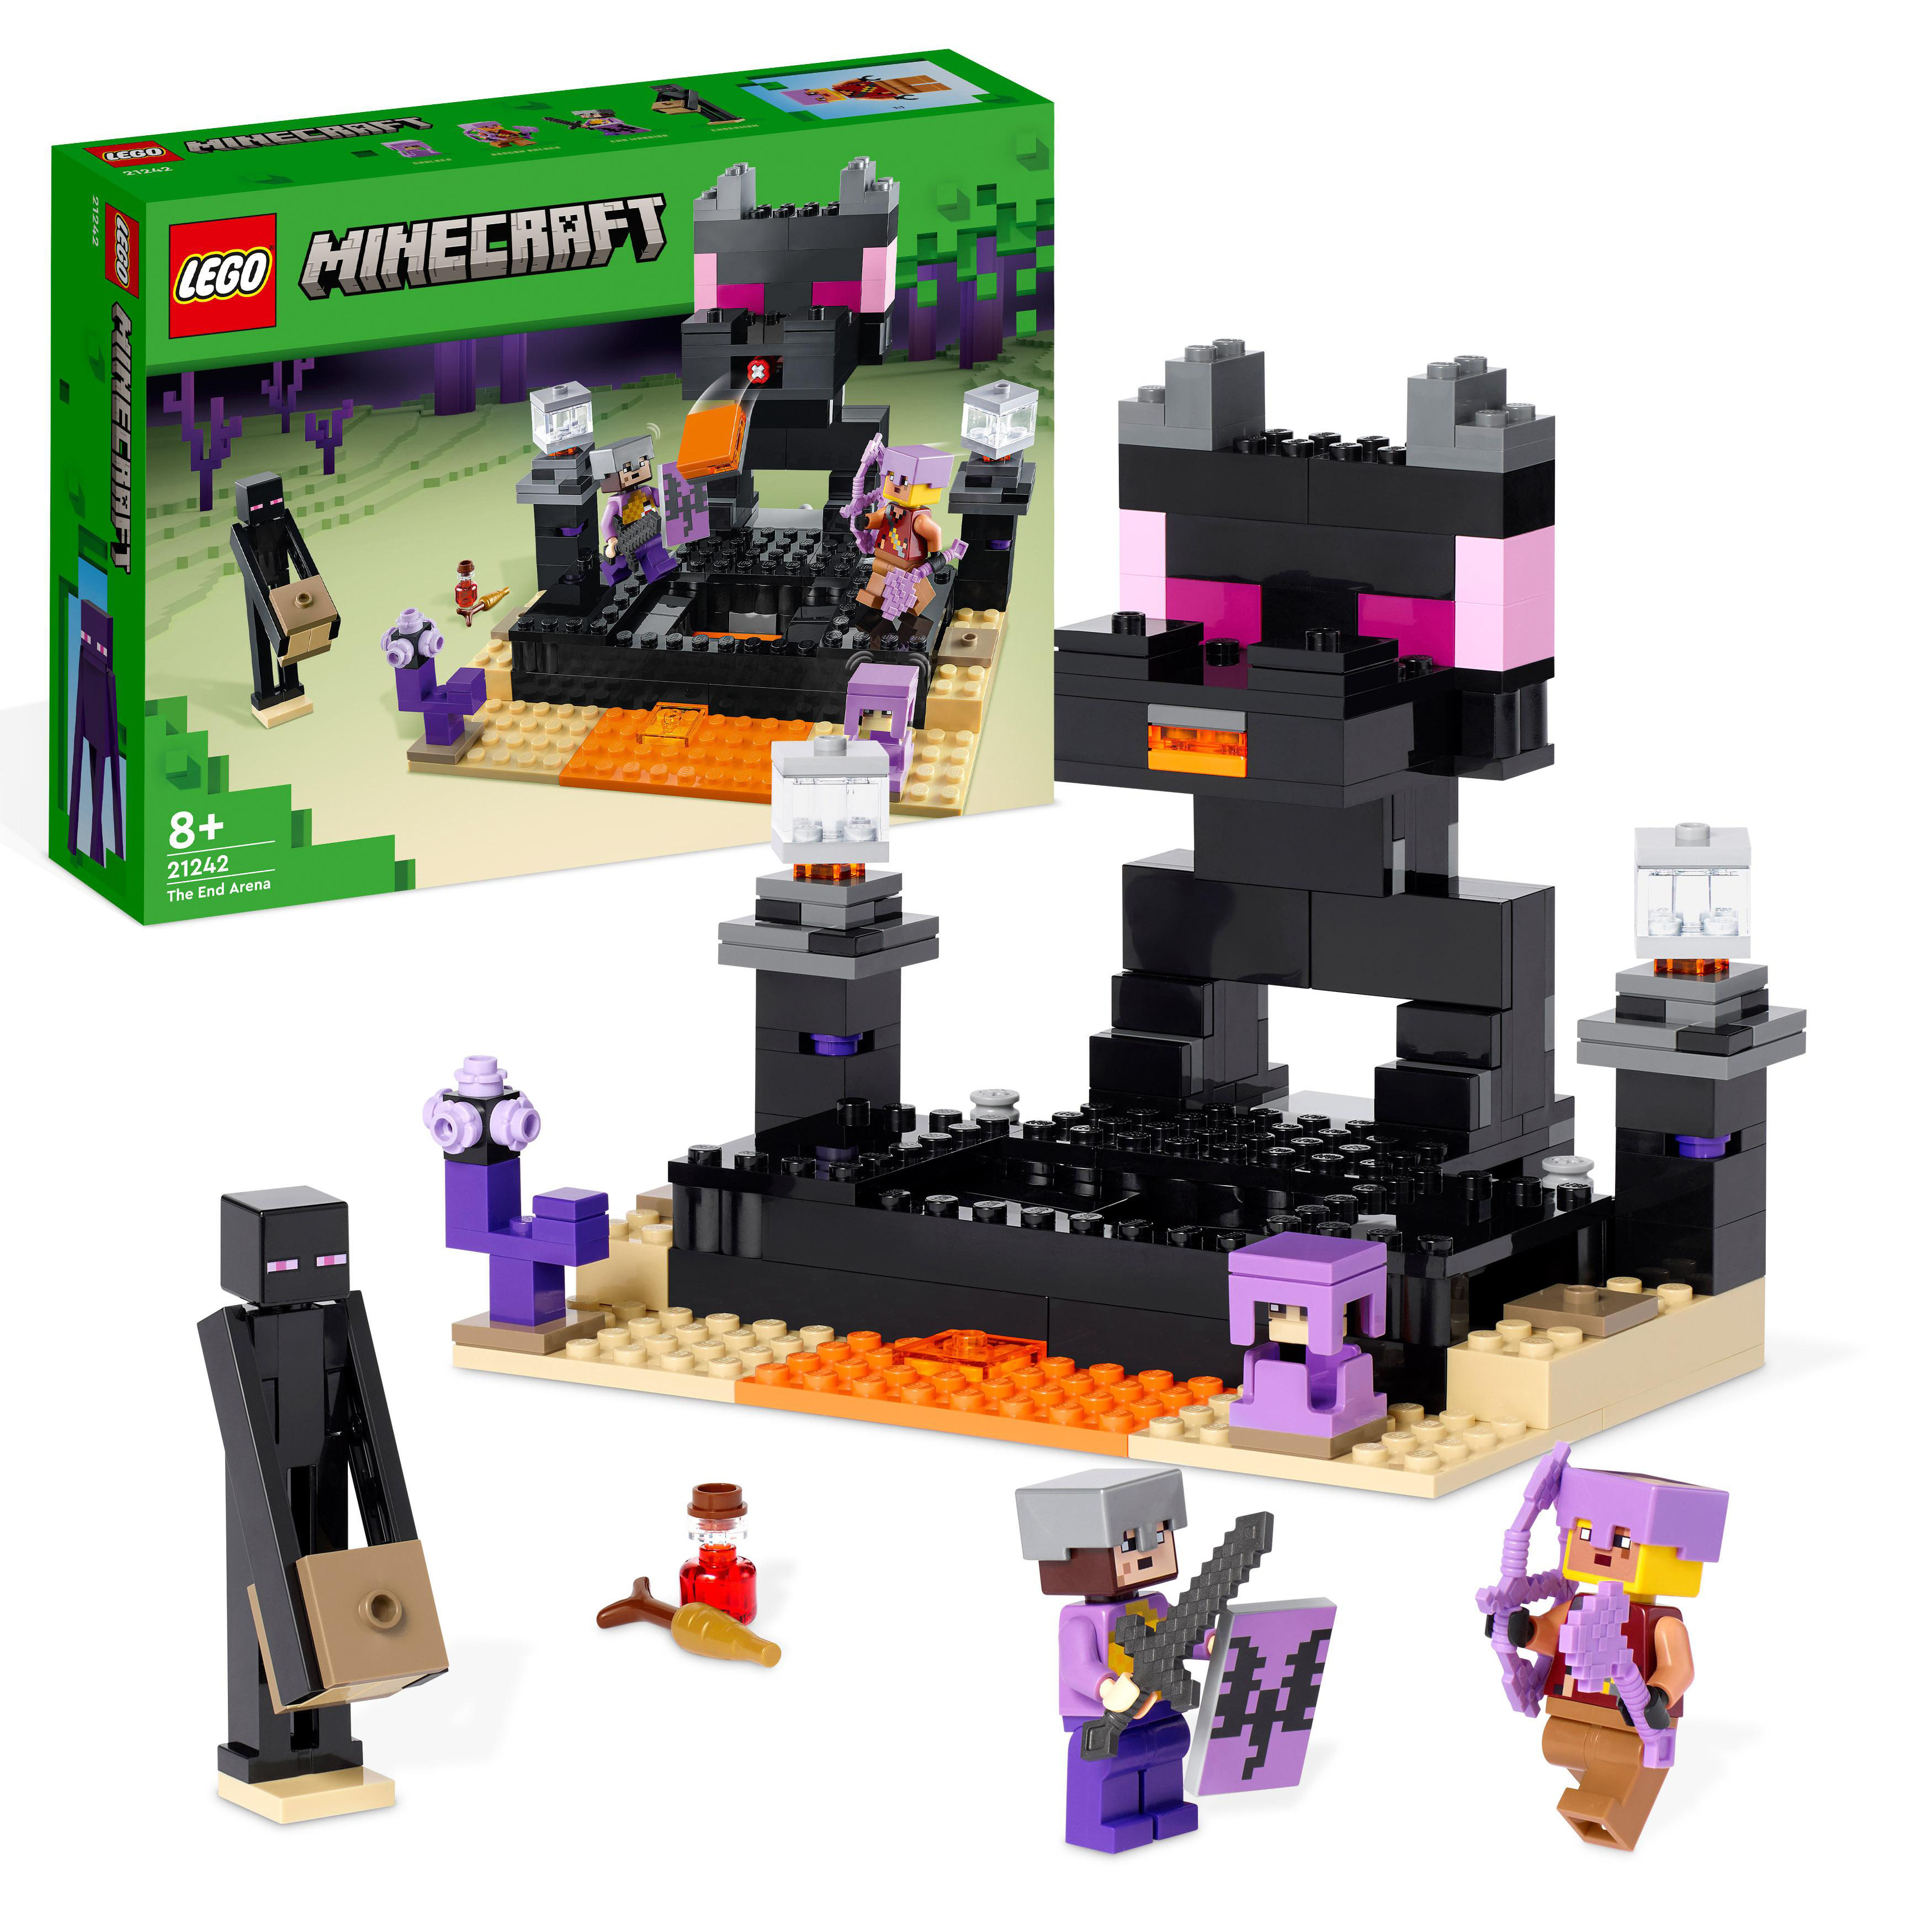 LEGO End-Arena Minecraft Mehrfarbig Bausatz, Die 21242